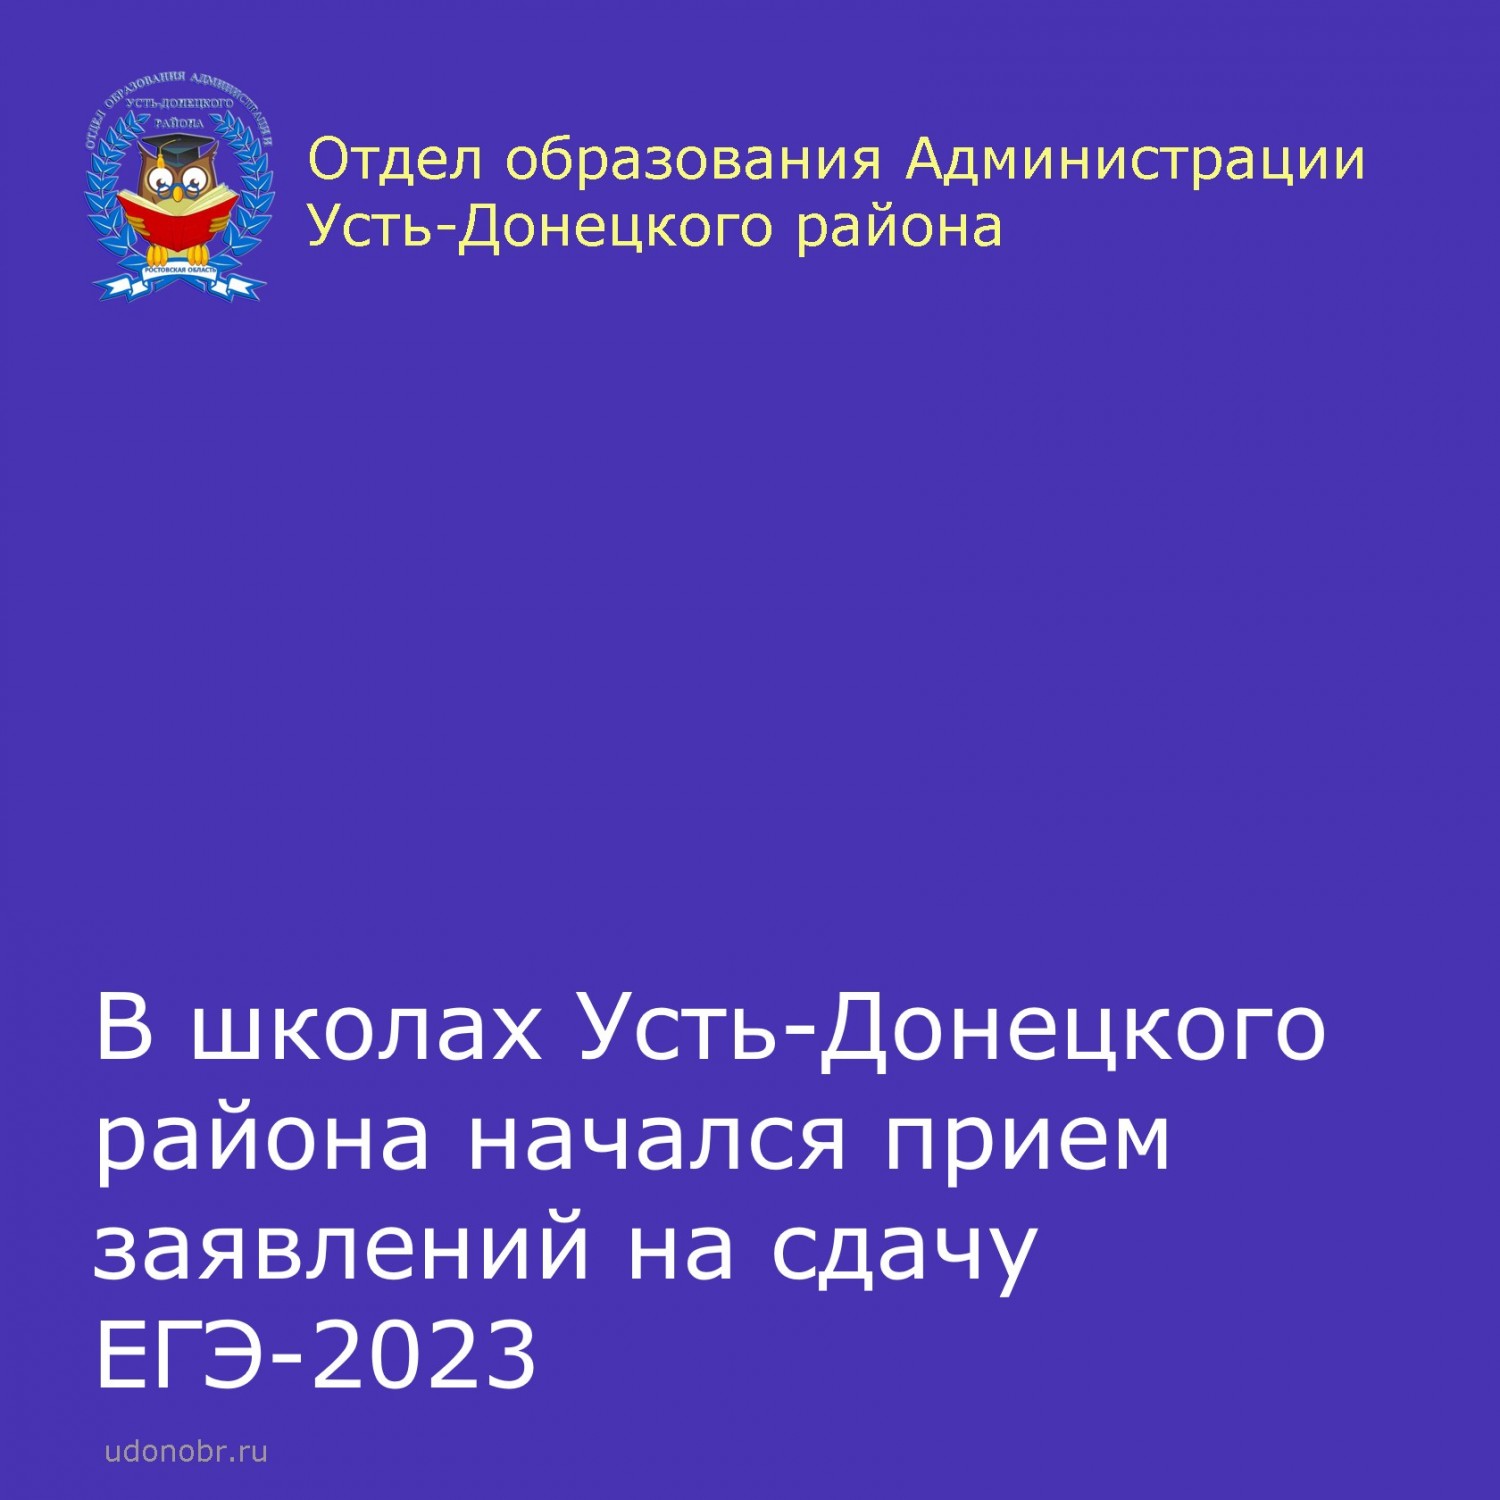 В школах Усть-Донецкого района начался прием заявлений на сдачу ЕГЭ-2023